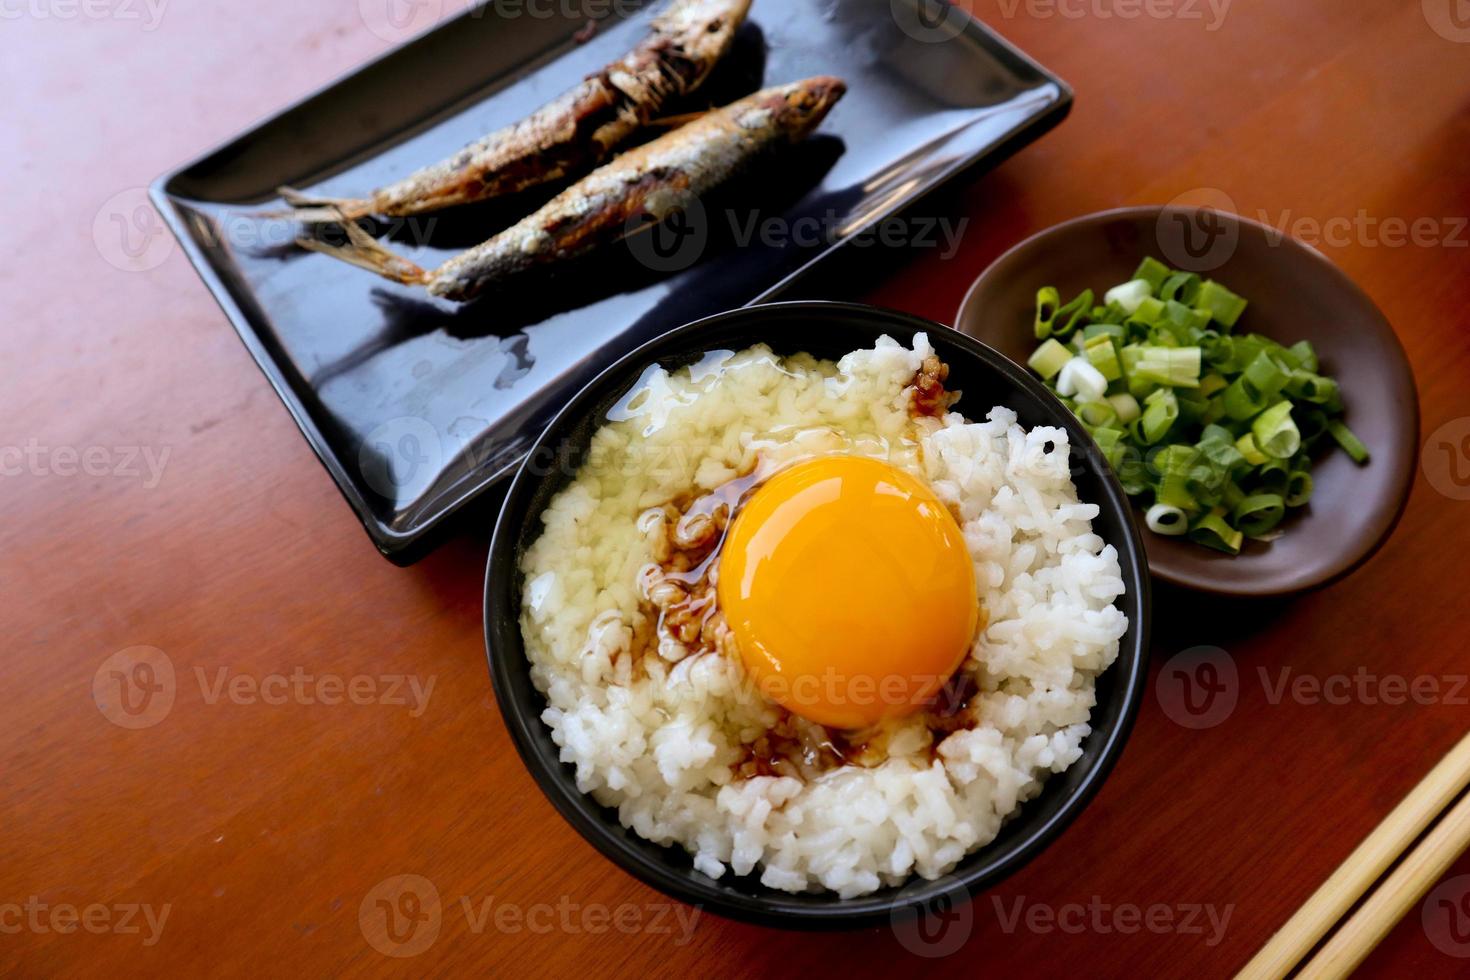 tamago kake gohan o huevo crudo sobre arroz. comida tradicional de japón, comer en el desayuno foto